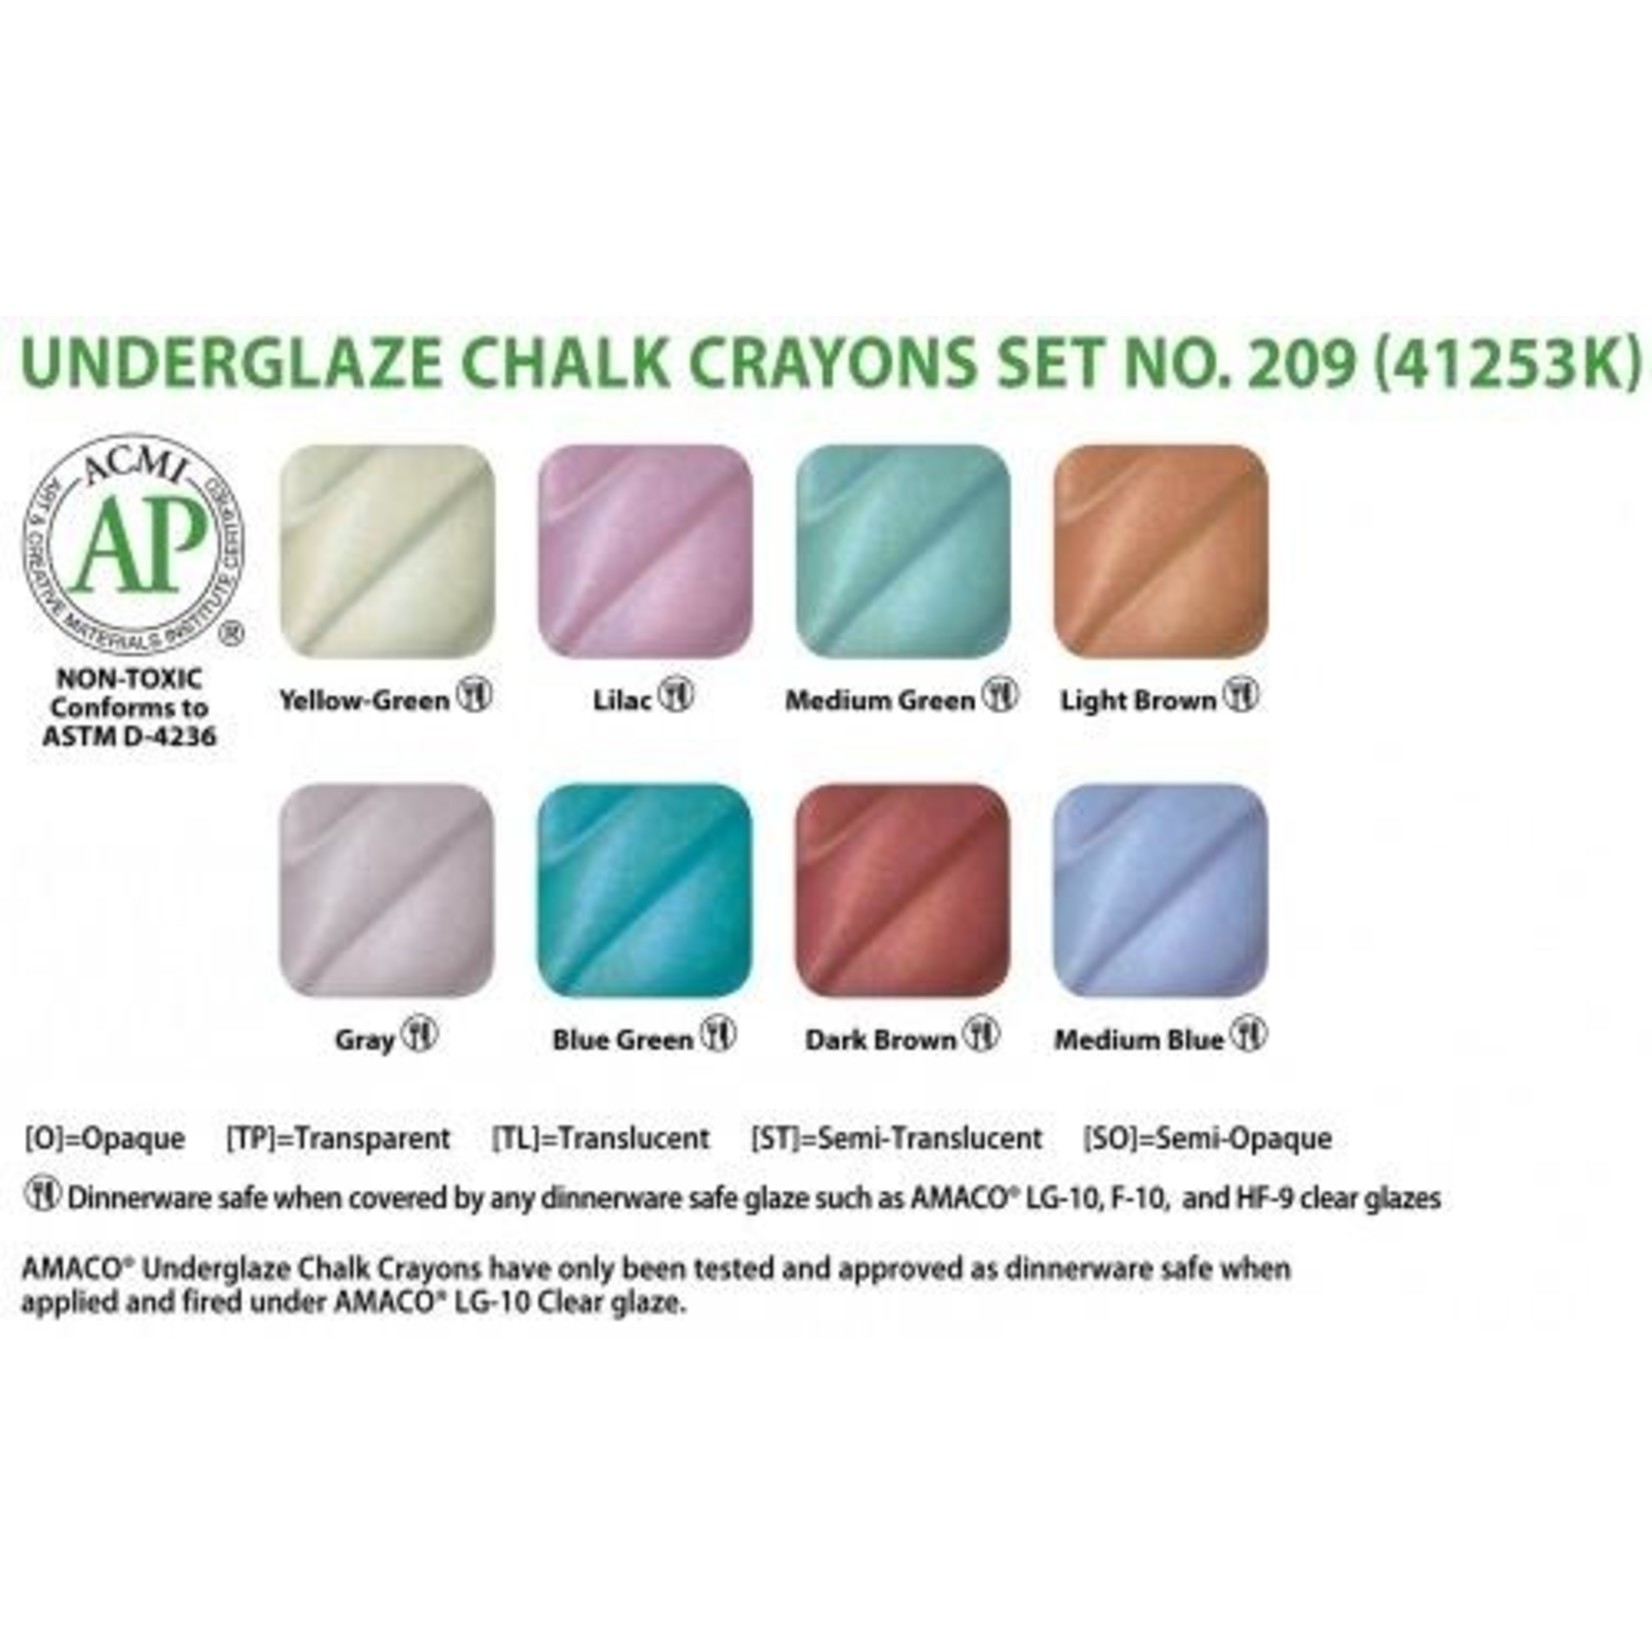 AMACO Underglaze Chalk Crayon Set #209